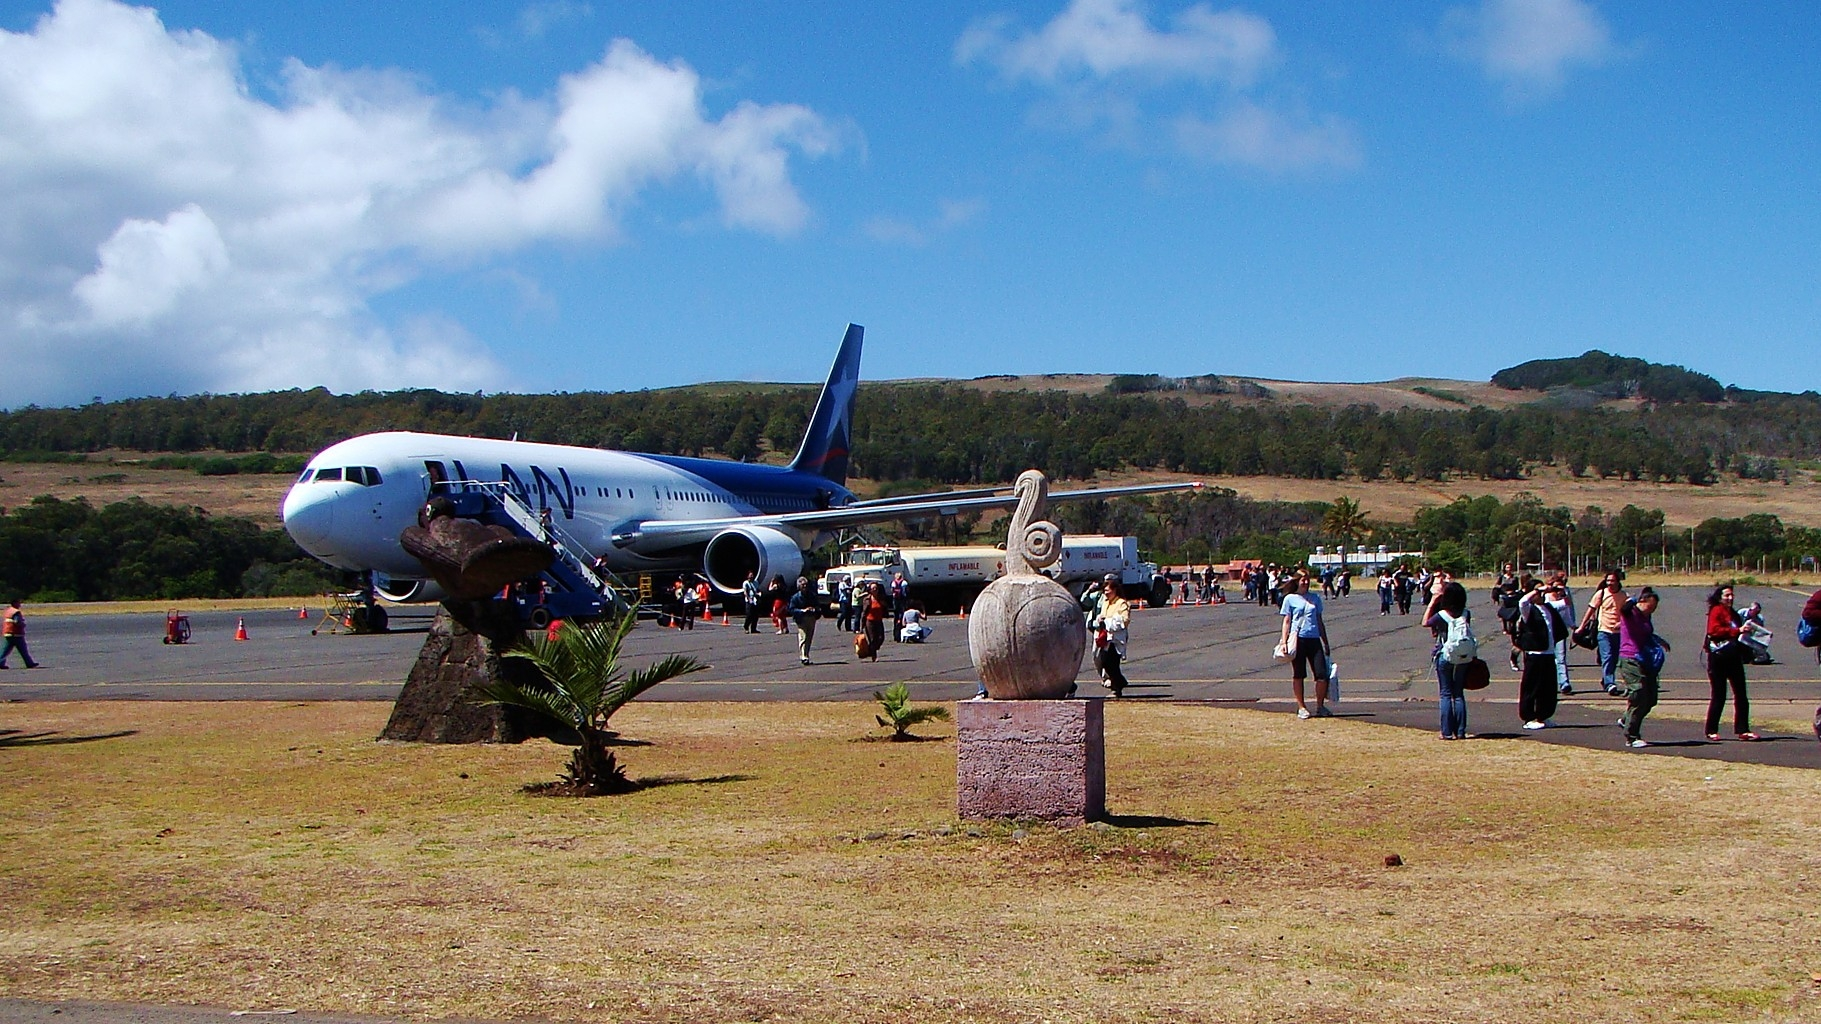 Piden al Gobierno retomar diálogo sobre histórica reclamación de terrenos en aeropuerto de Rapa Nui